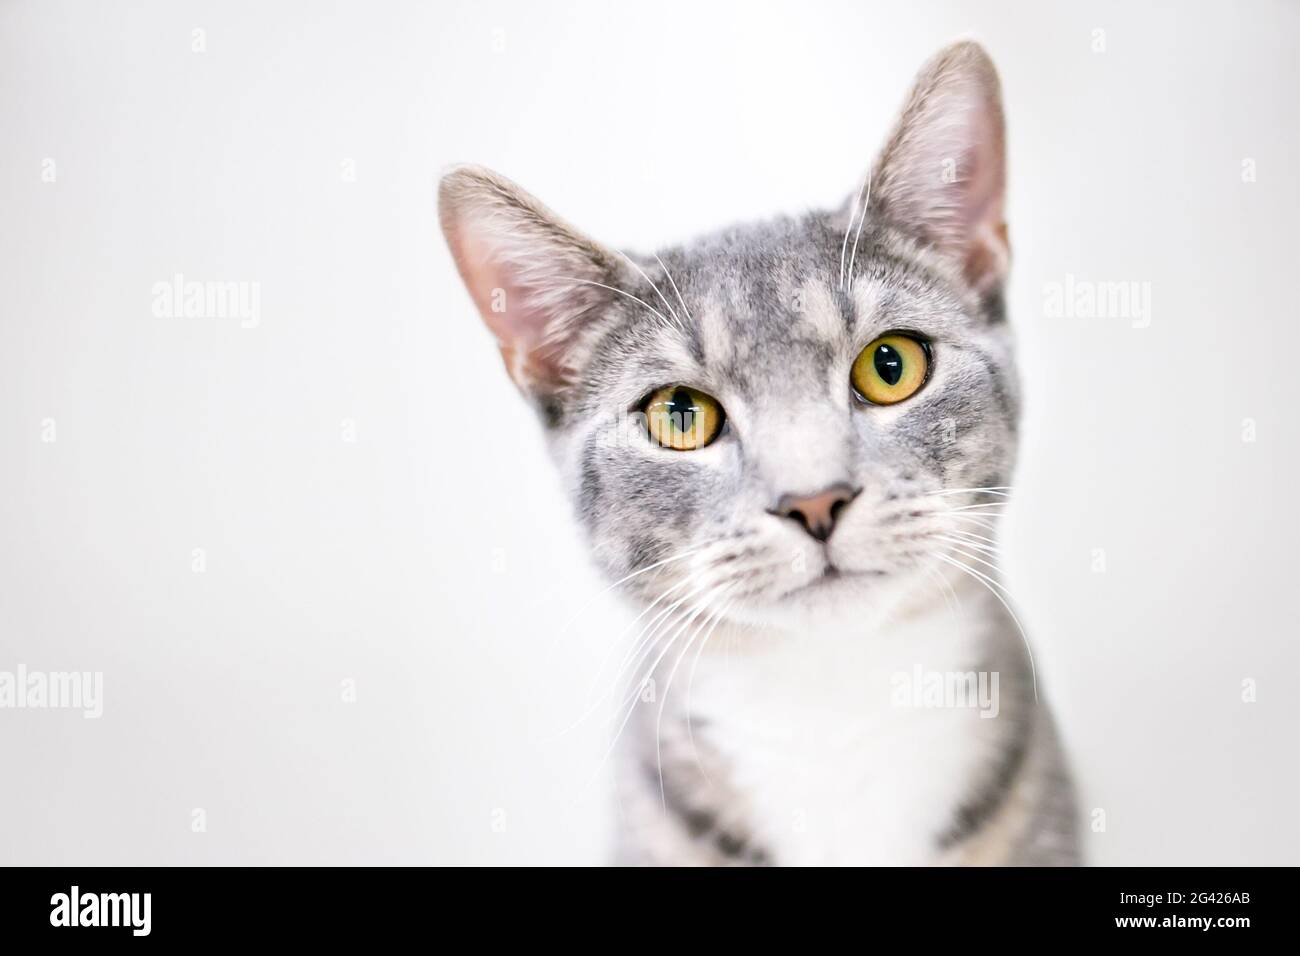 Un tabby gris et blanc chat court avec des yeux jaune vif regardant la caméra avec une inclinaison de tête Banque D'Images